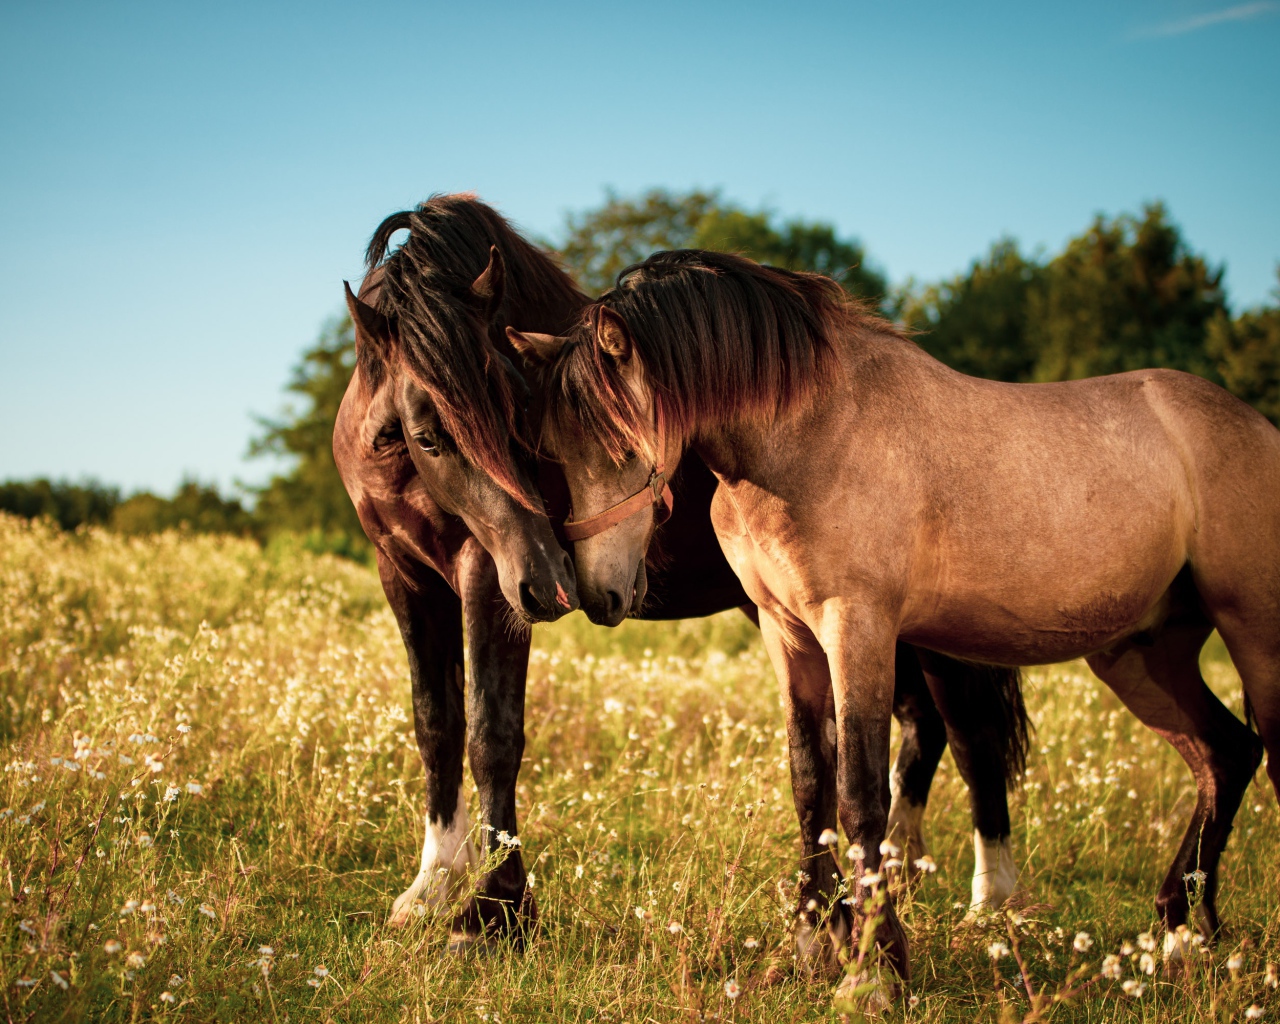 Две влюбленные лошади пасутся на зеленой траве